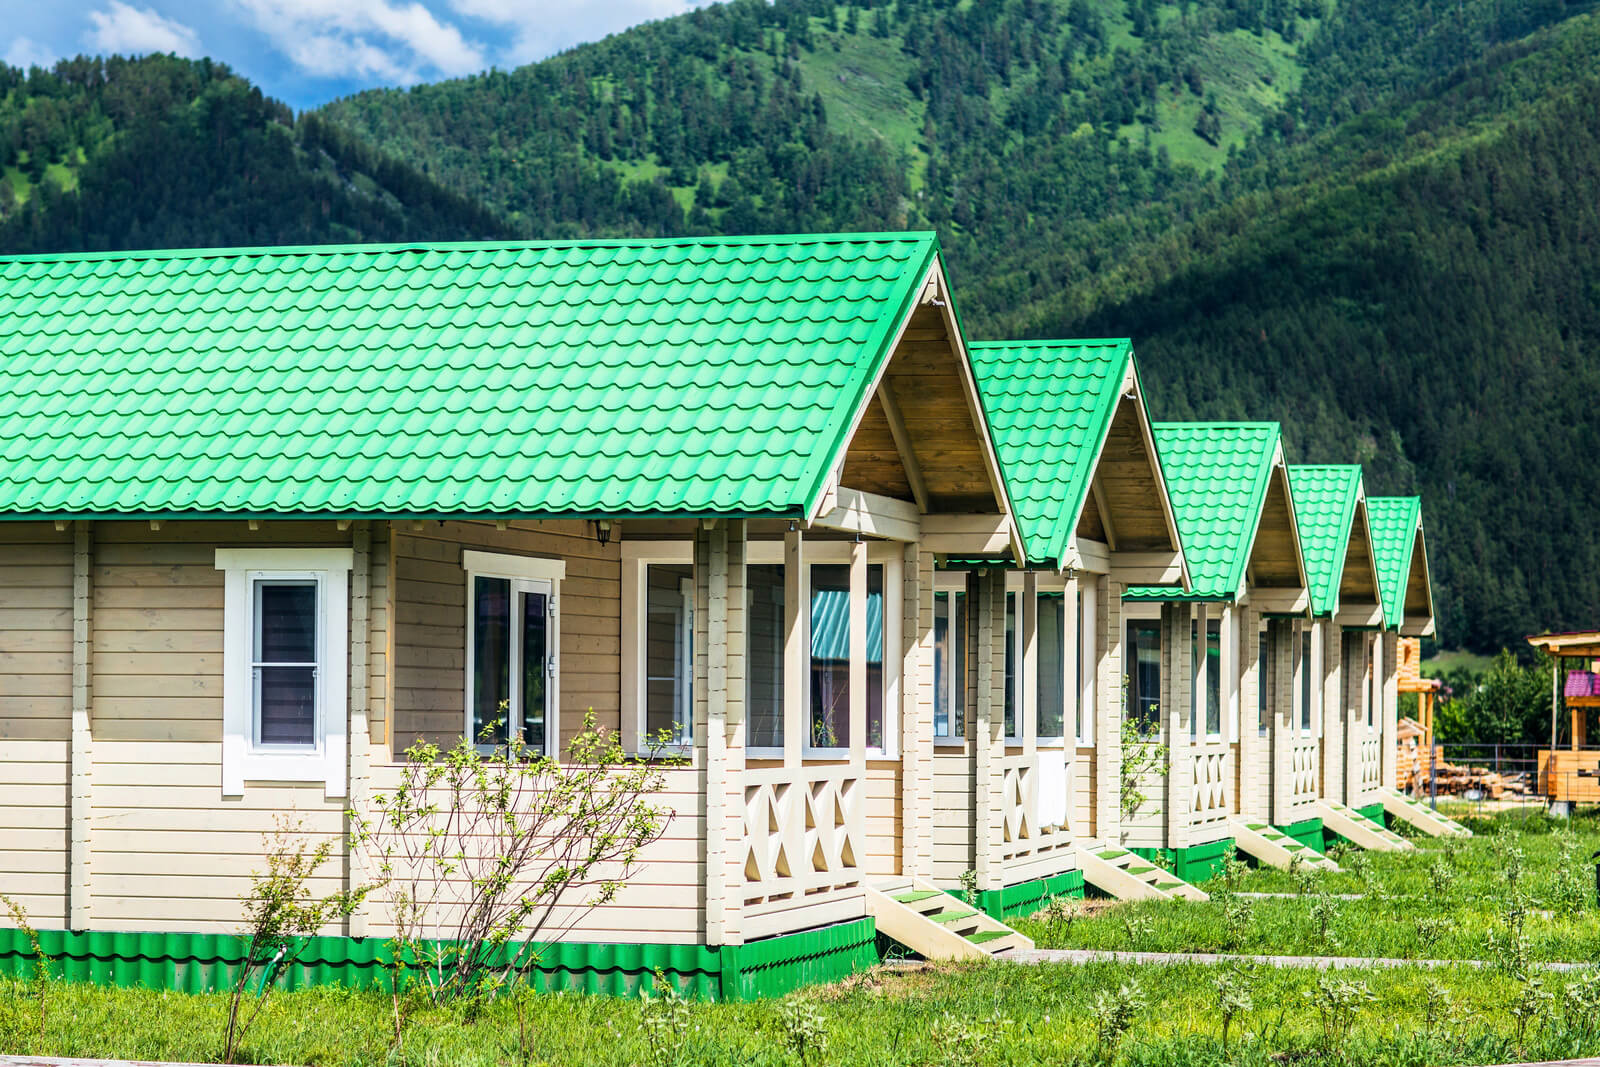 Стройный ряд домиков. Светло-зеленые крыши и светло-бежевые стены.